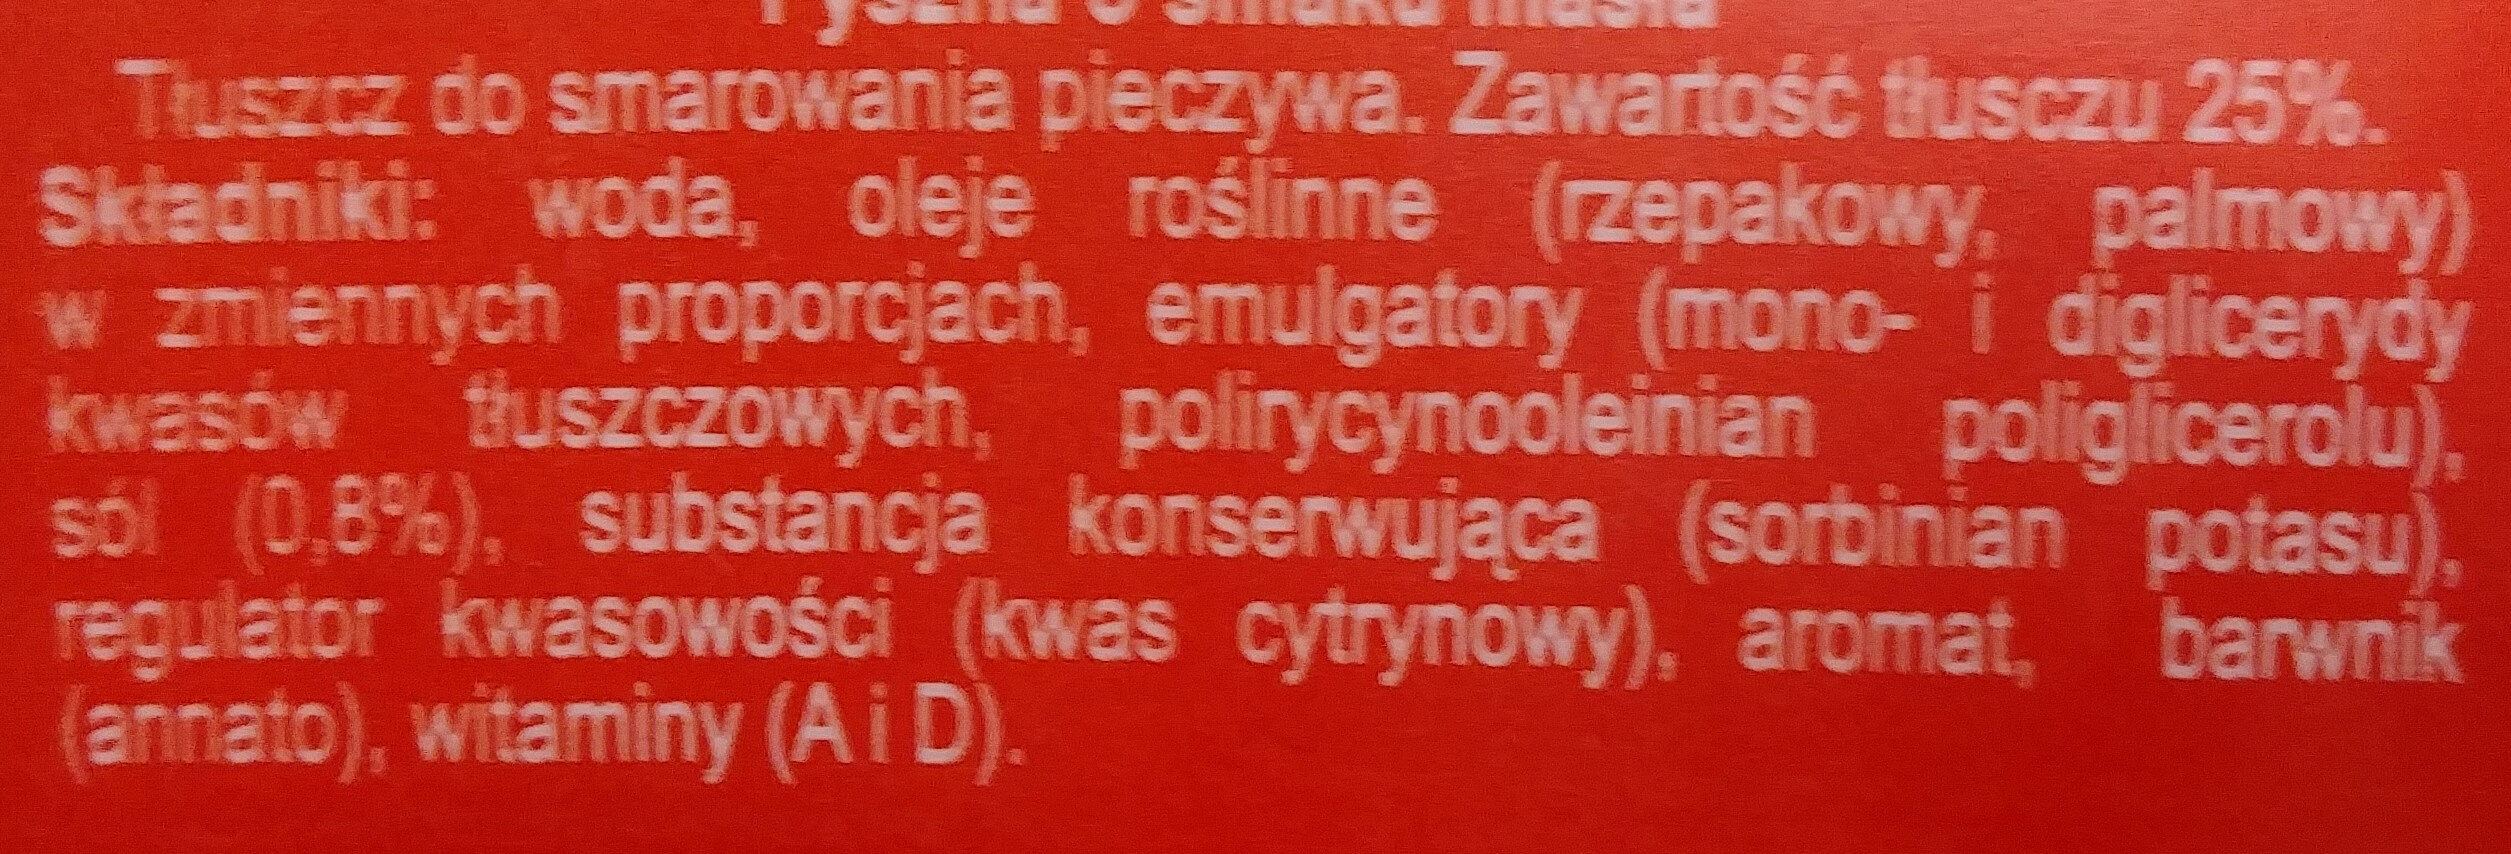 Margaryna Pyszna o smaku masła - Ingrediënten - pl